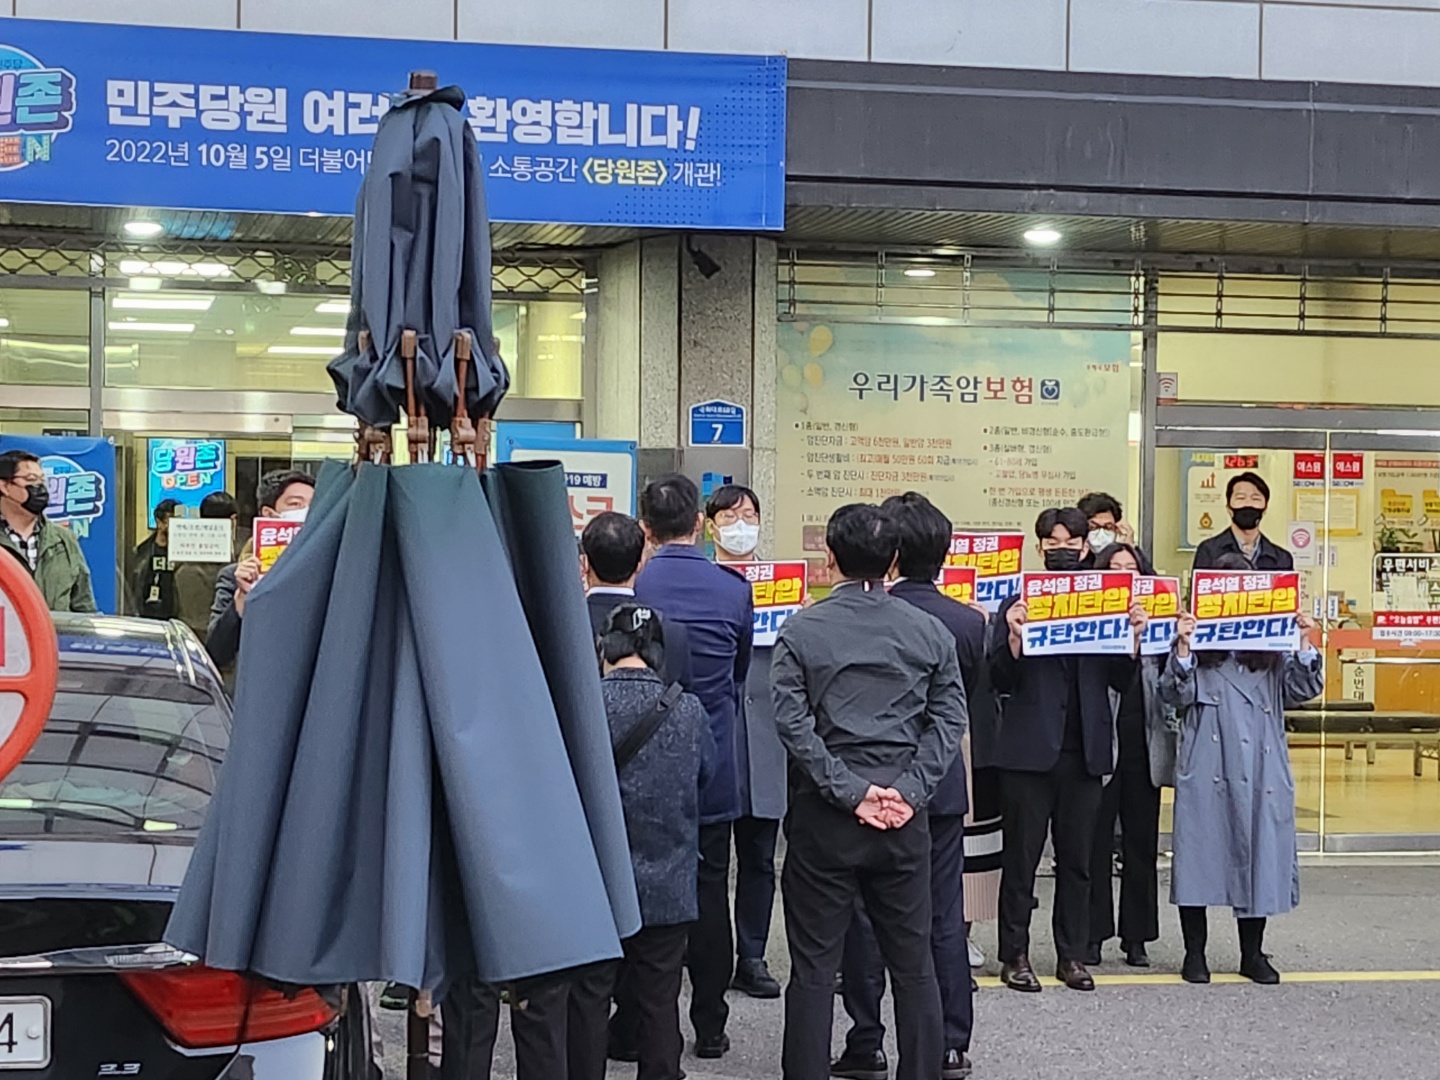 19일 서울 여의도 더불어민주당 당사 앞에서 민주당 당직자들과 검찰 수사관들이 대치중인 모습.